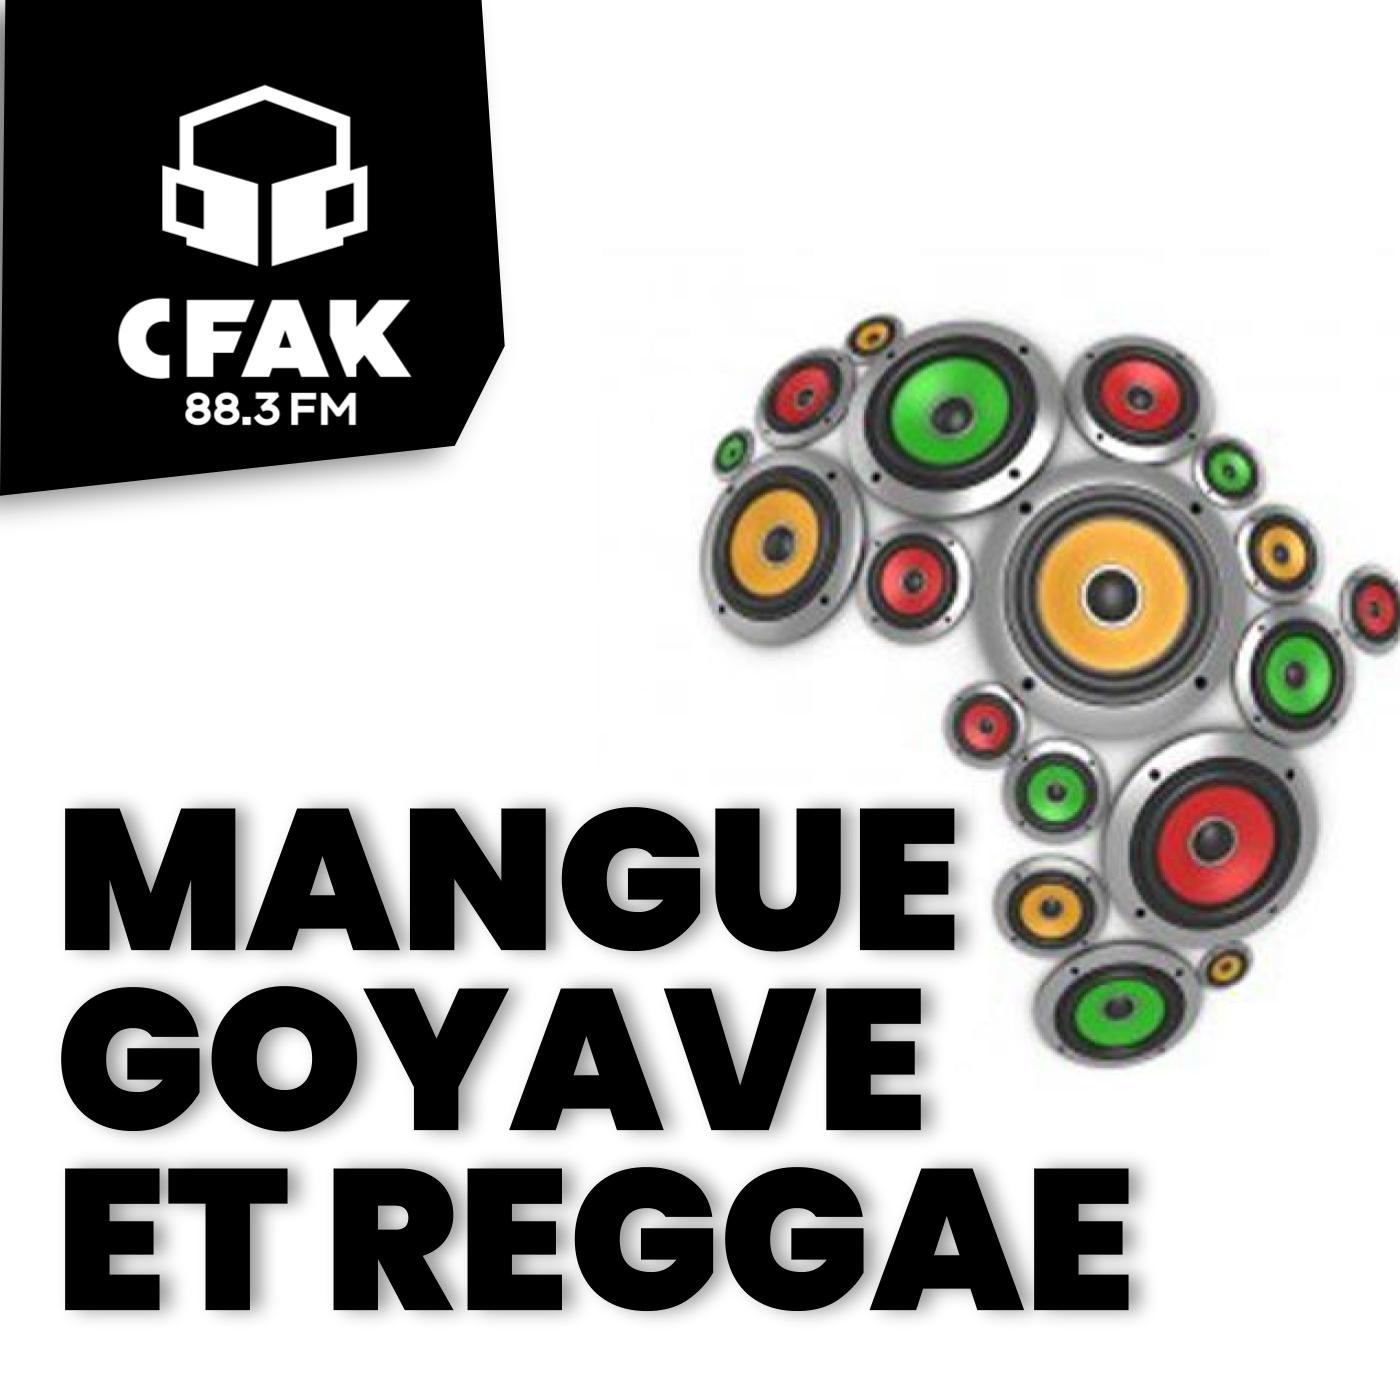 Mangue, Goyave et Reggae – 15 janvier 2020